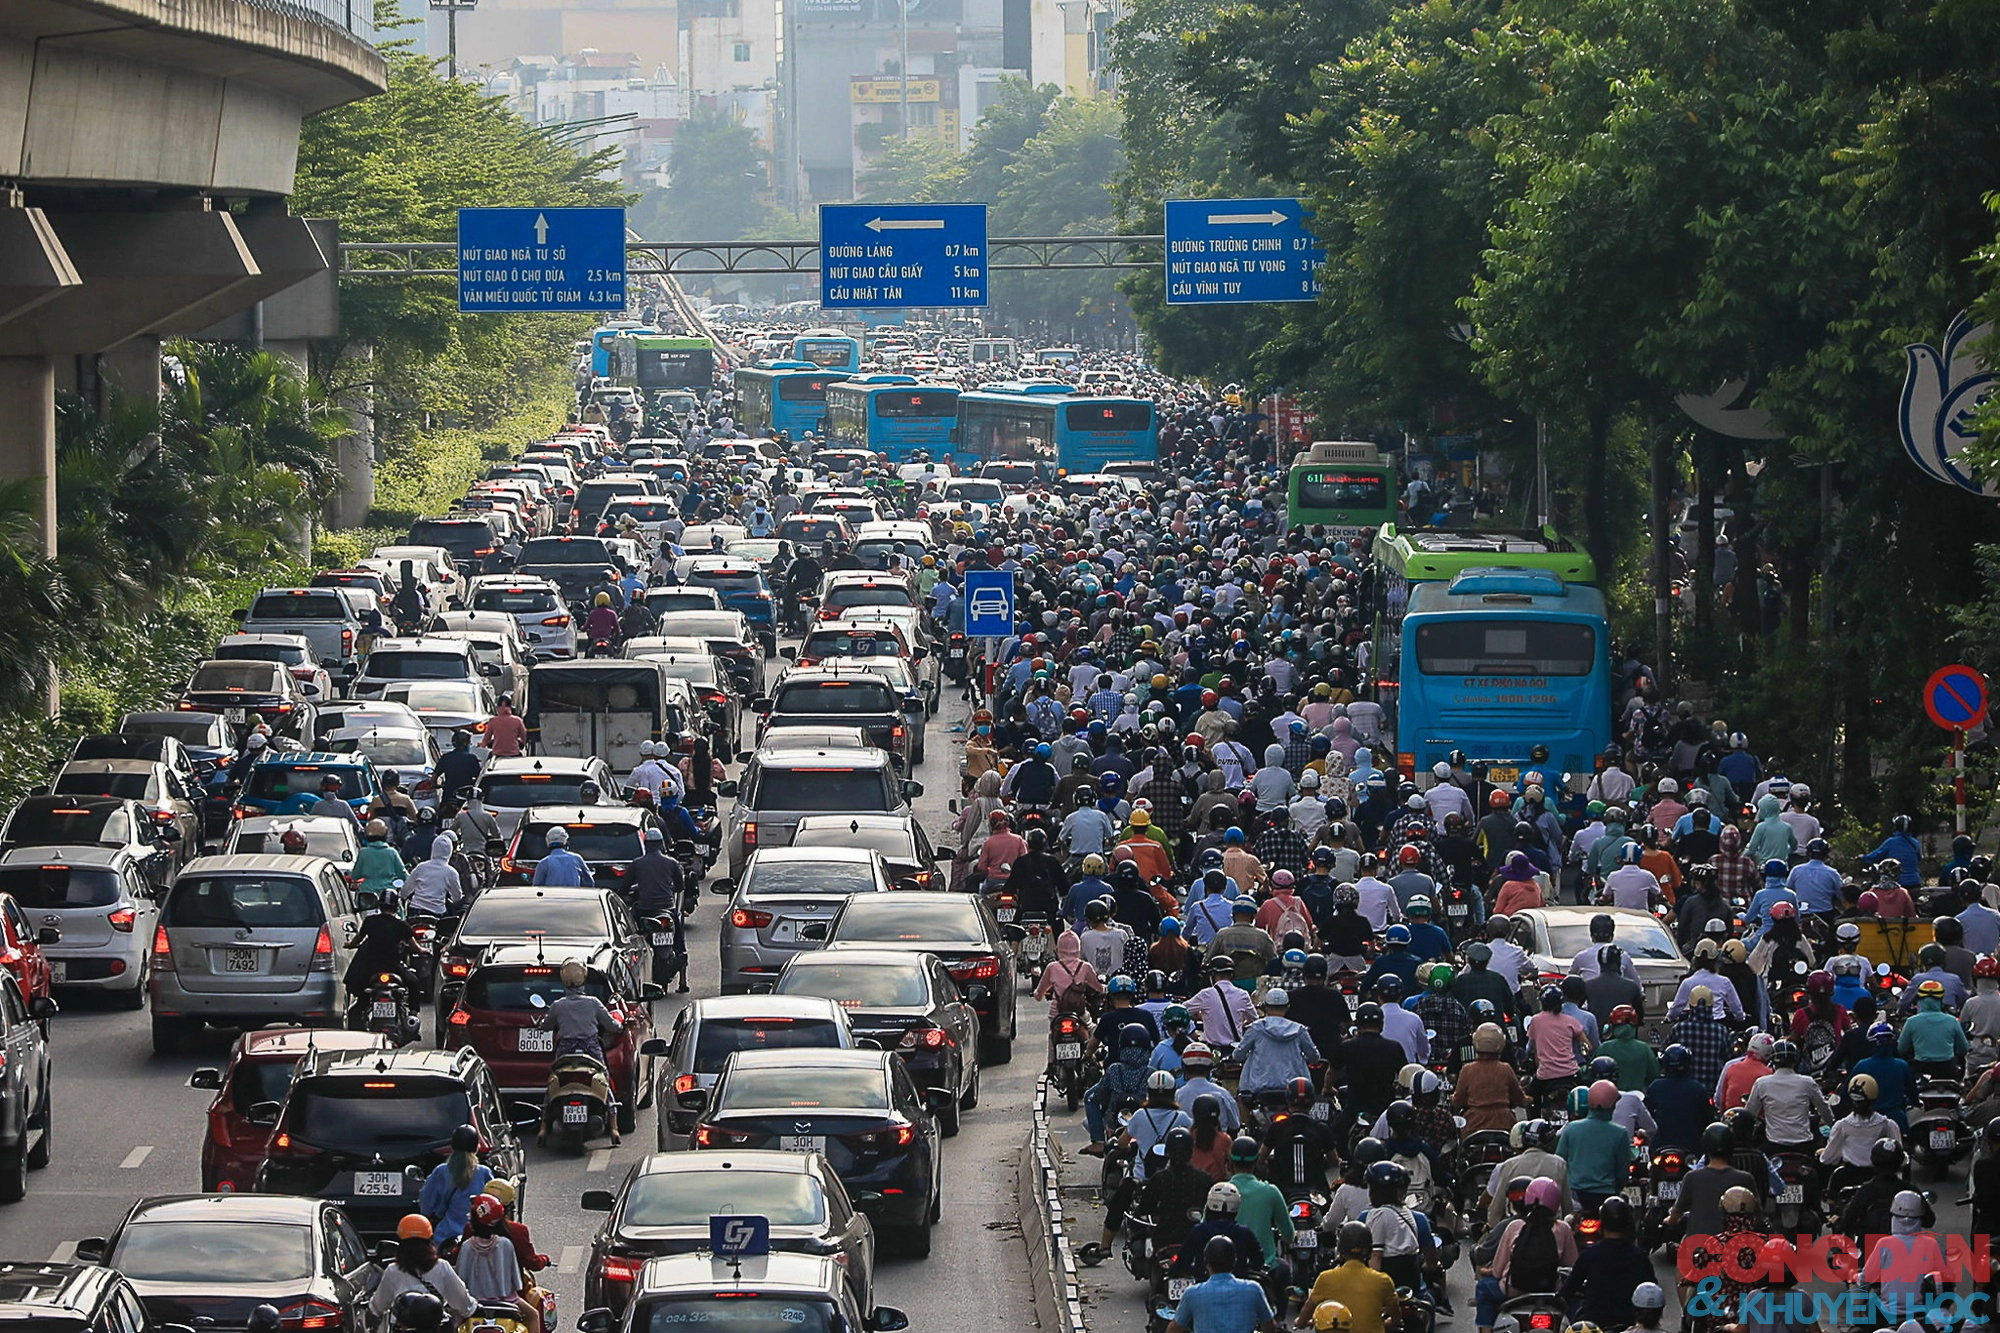 Hà Nội: Đường Nguyễn Trãi vẫn lộn xộn, xe đi sai làn chưa bị xử phạt - Ảnh 2.